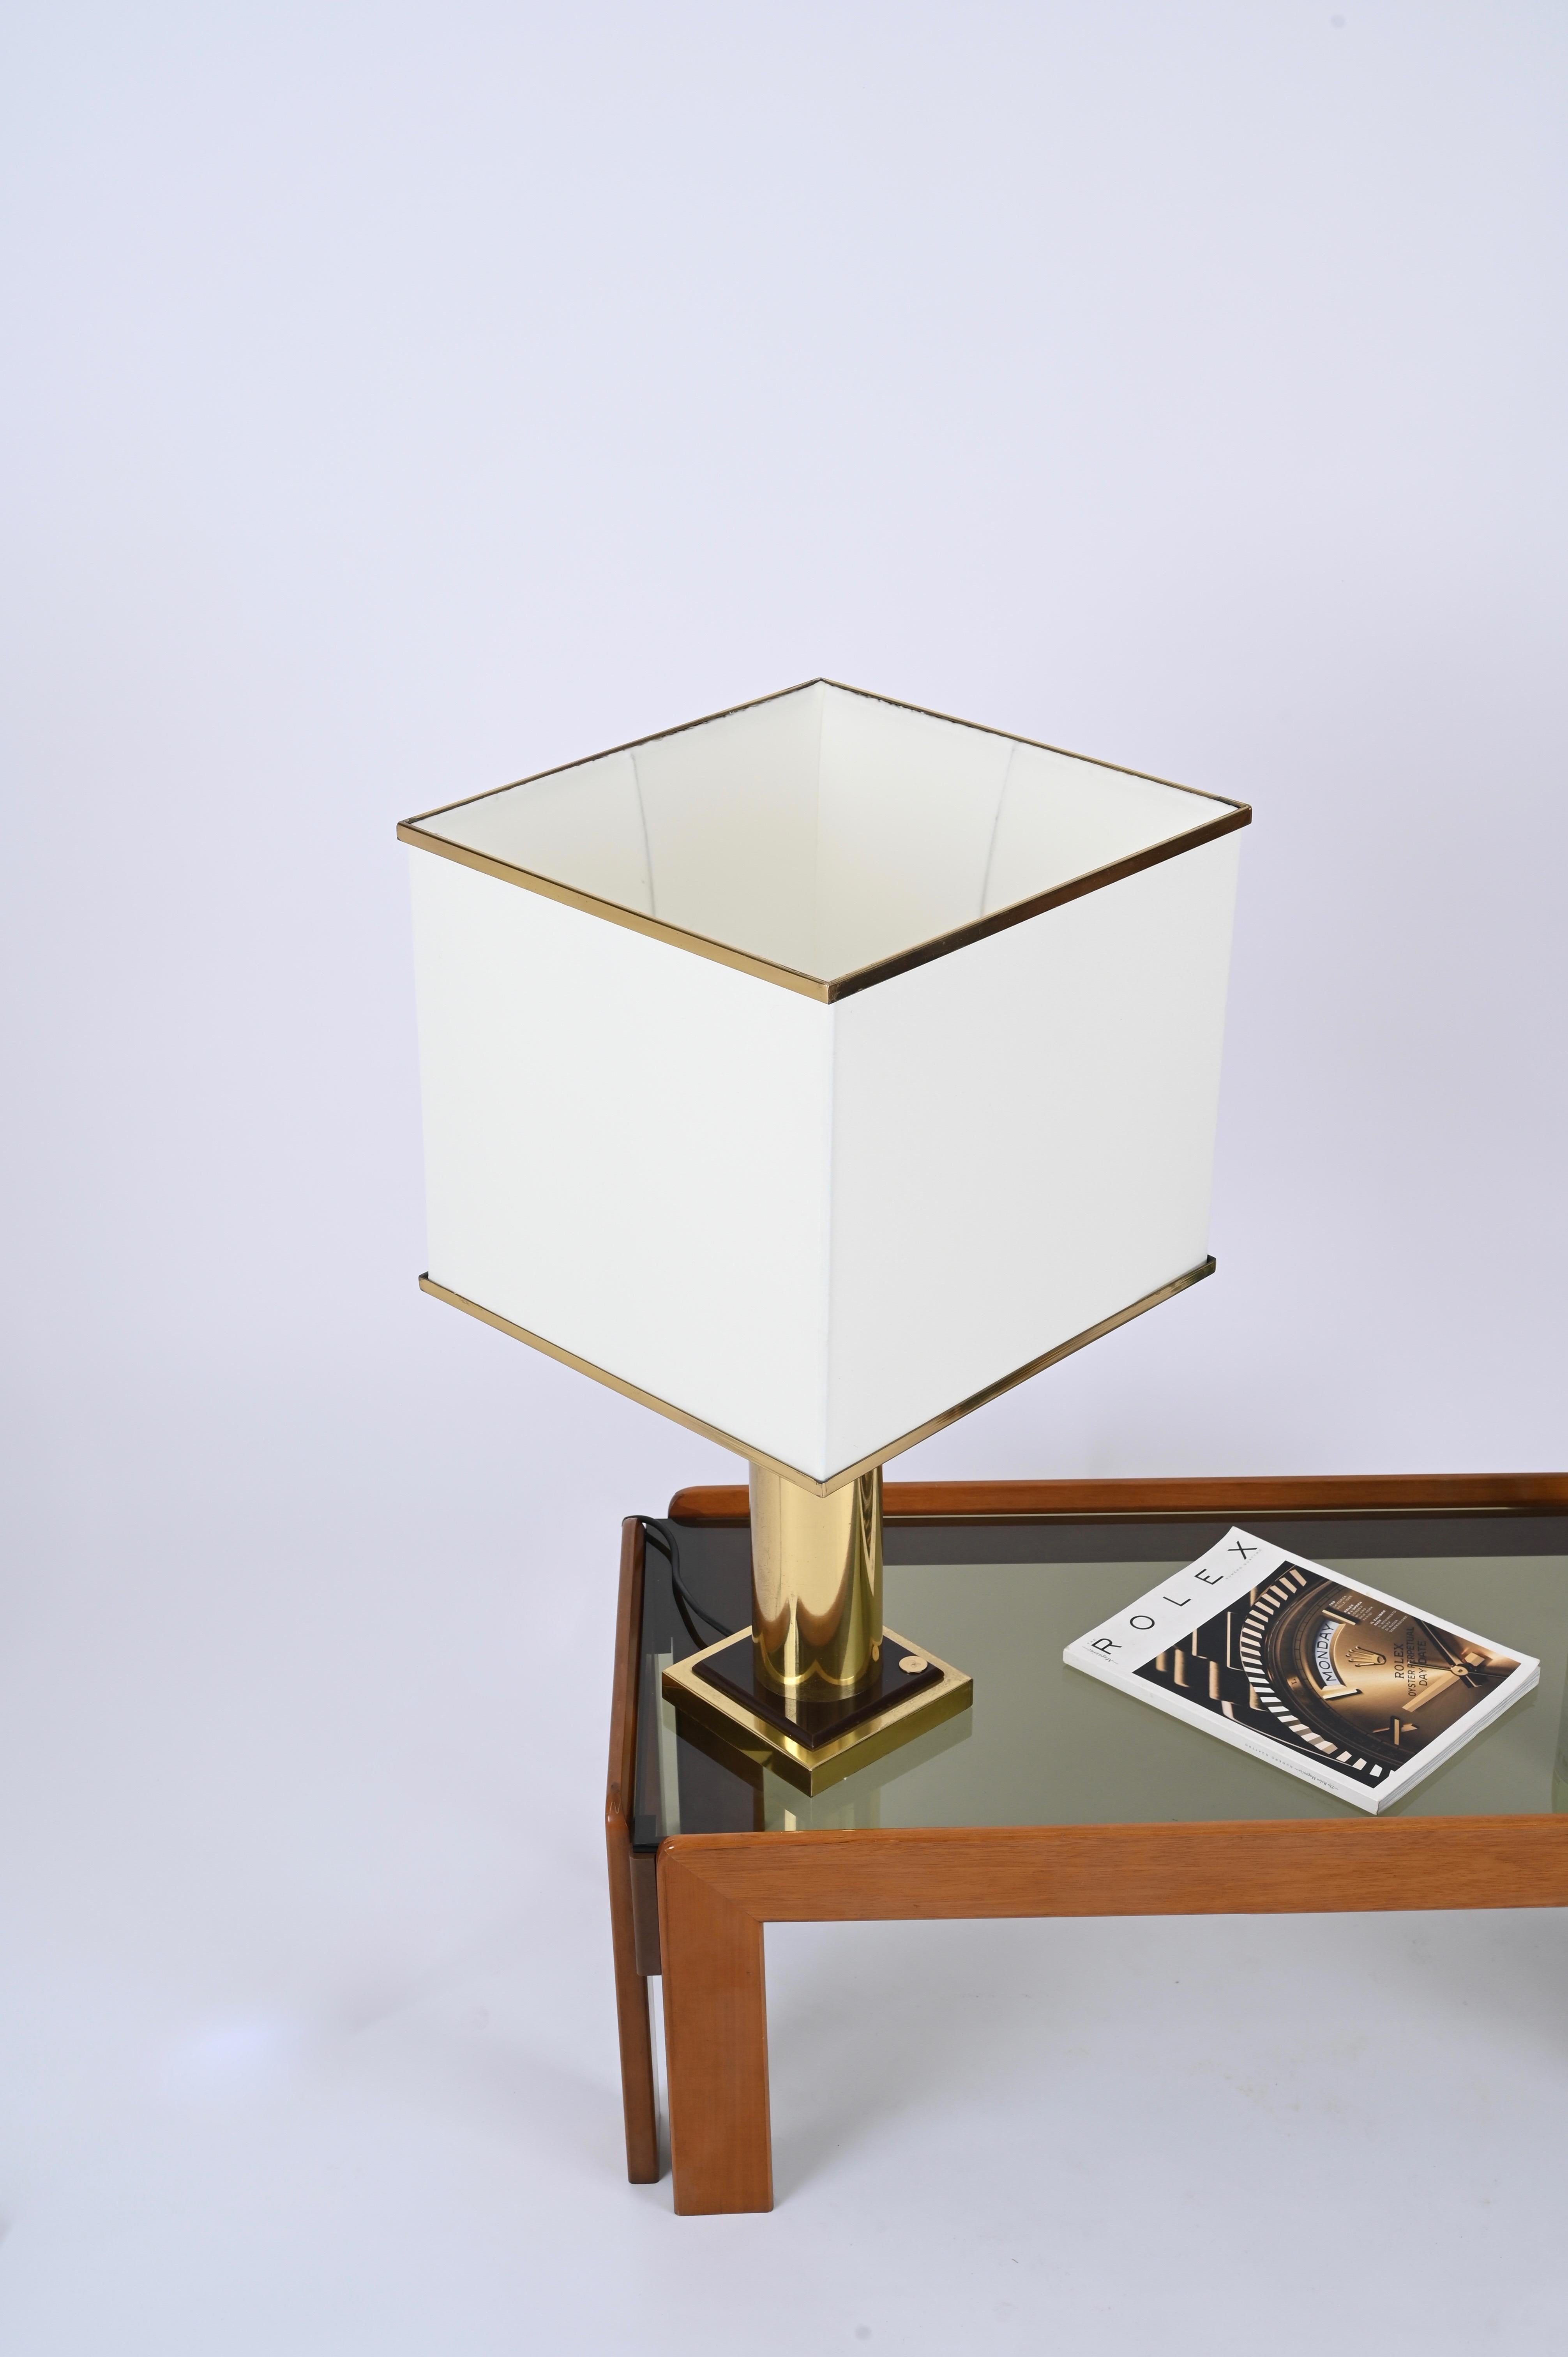 Fantastique lampe de table du milieu du siècle en laiton massif et en plexiglas brun, avec son abat-jour d'origine en soie et en laiton. Cette magnifique pièce est signée par Romeo Rega et a été conçue en Italie dans les années 1970. 

Cette superbe